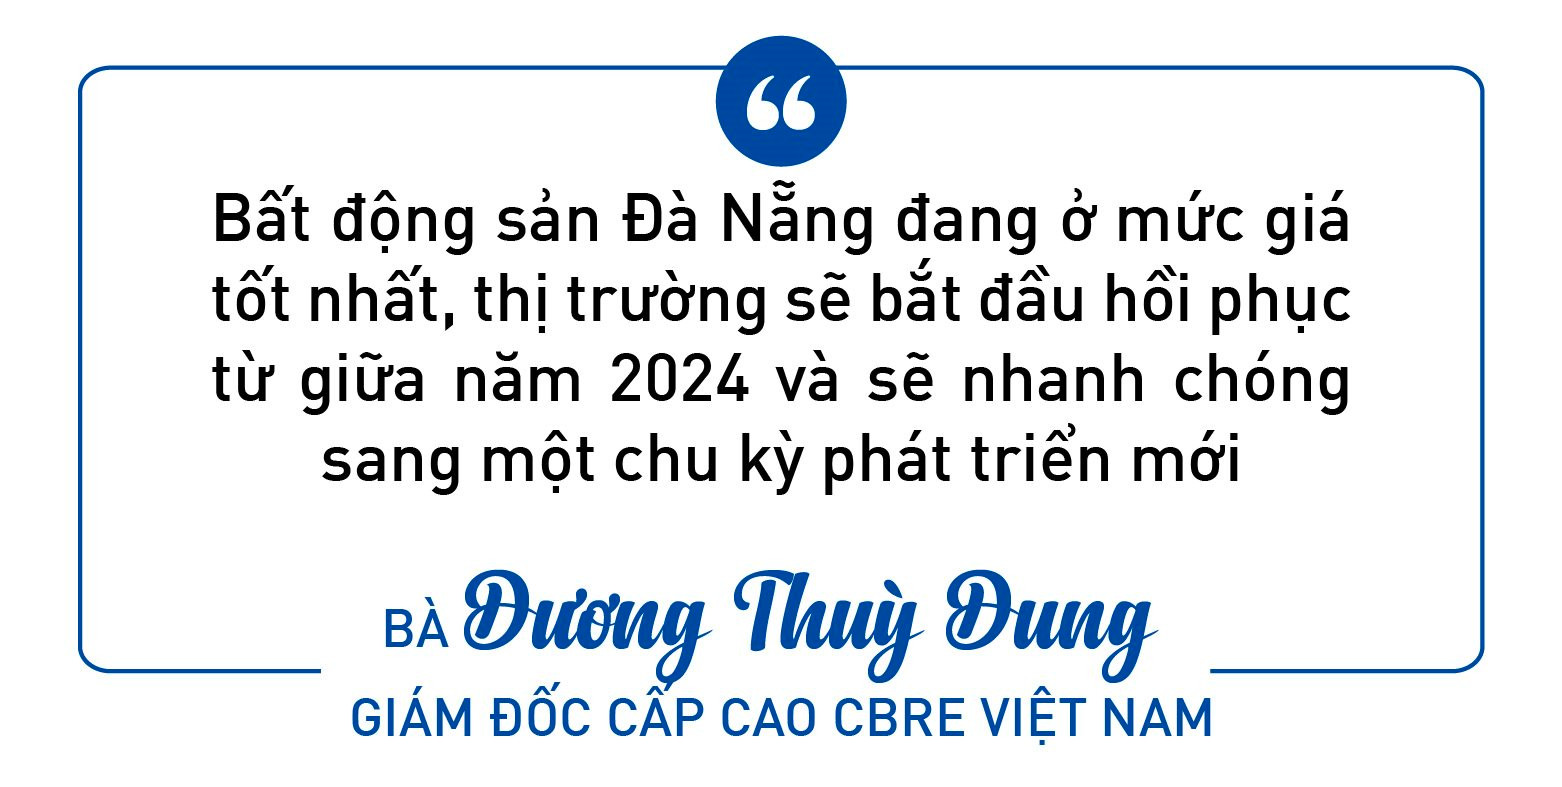 Sếp CBRE Việt Nam: Bất động sản Đà Nẵng đặc biệt bậc nhất khu vực Đông Nam Á - Ảnh 3.